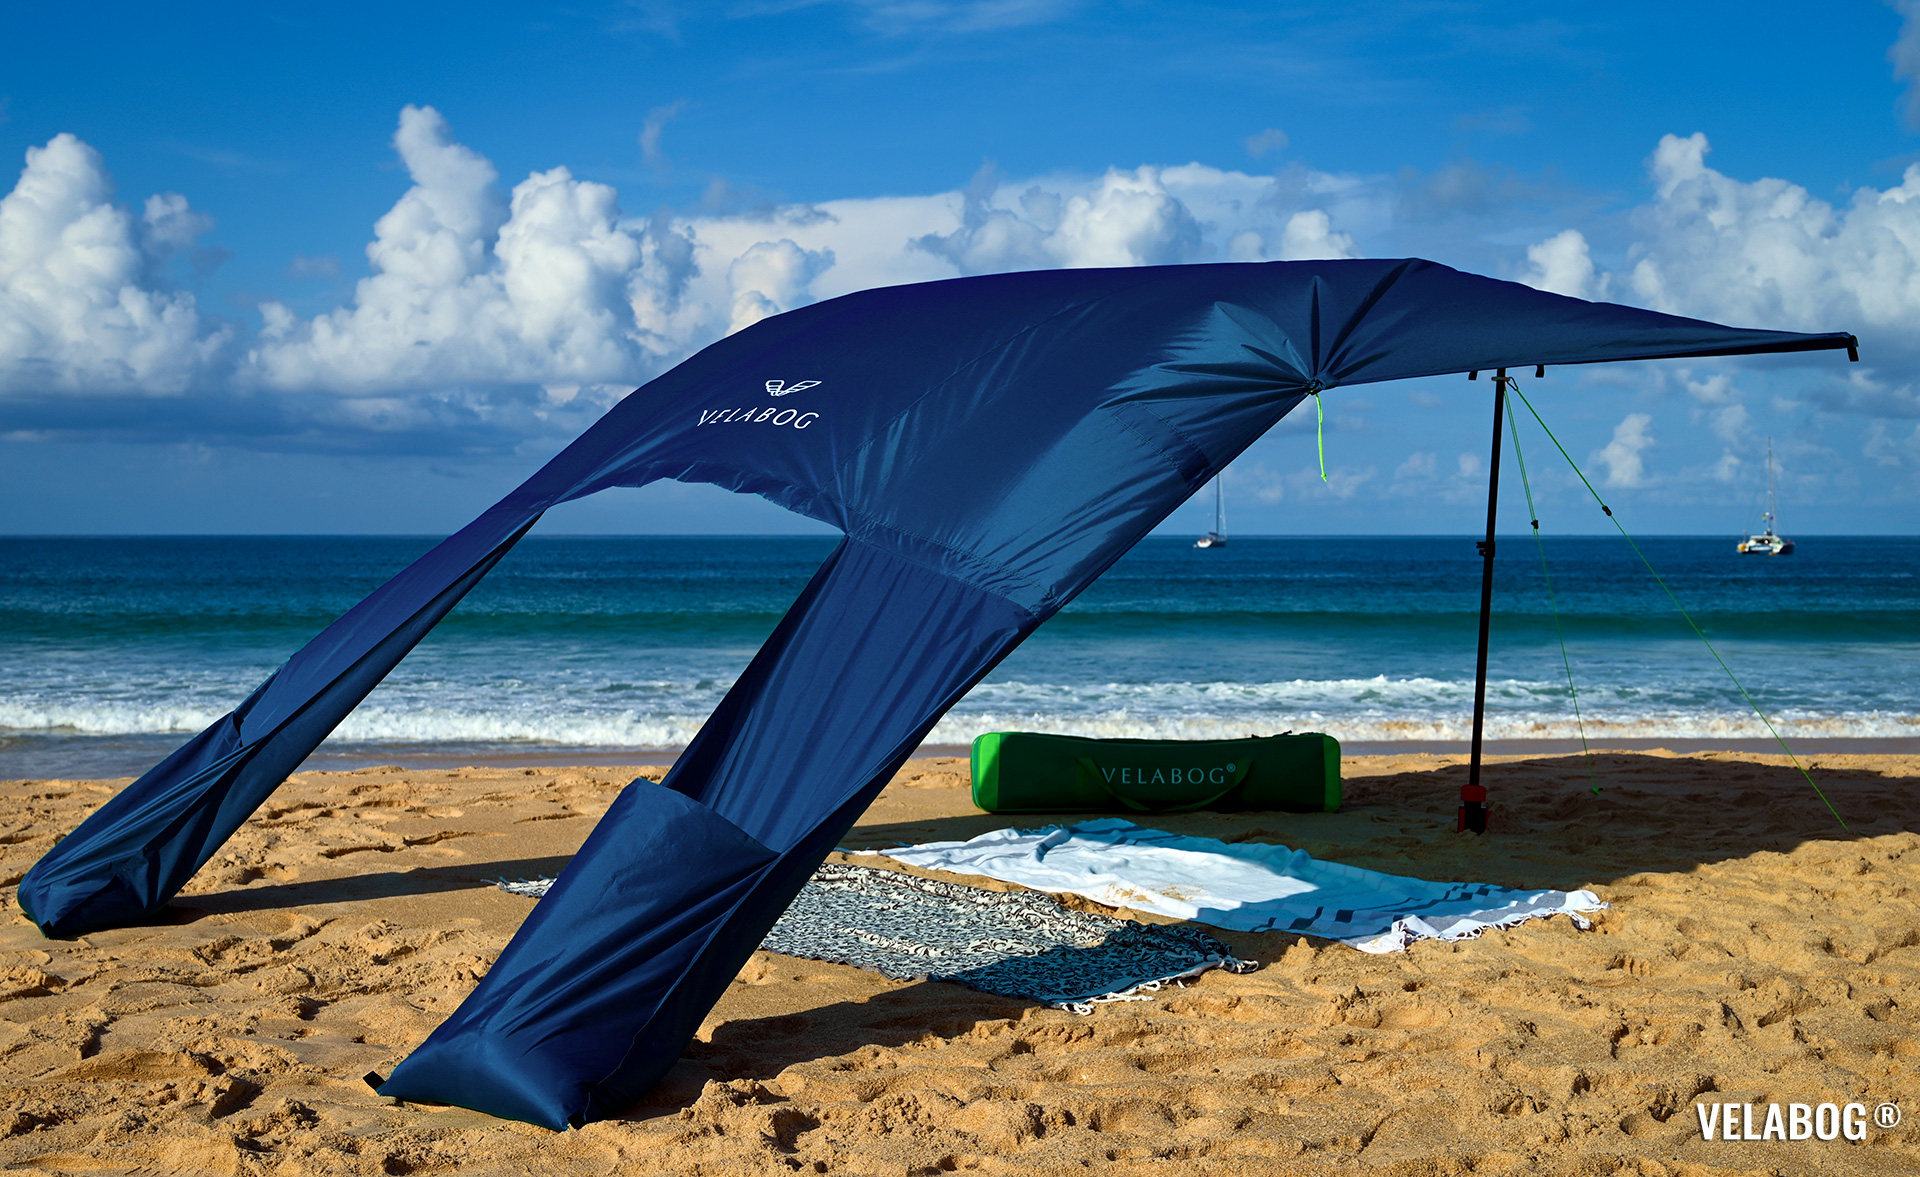 Strand Sonnensegel Strandzelt Velabog Breeze. Aufbauoption A - leichter bis starker Wind. Farbe: nachtblau. Bester Sonnenschutz Strand. | Velabog ©